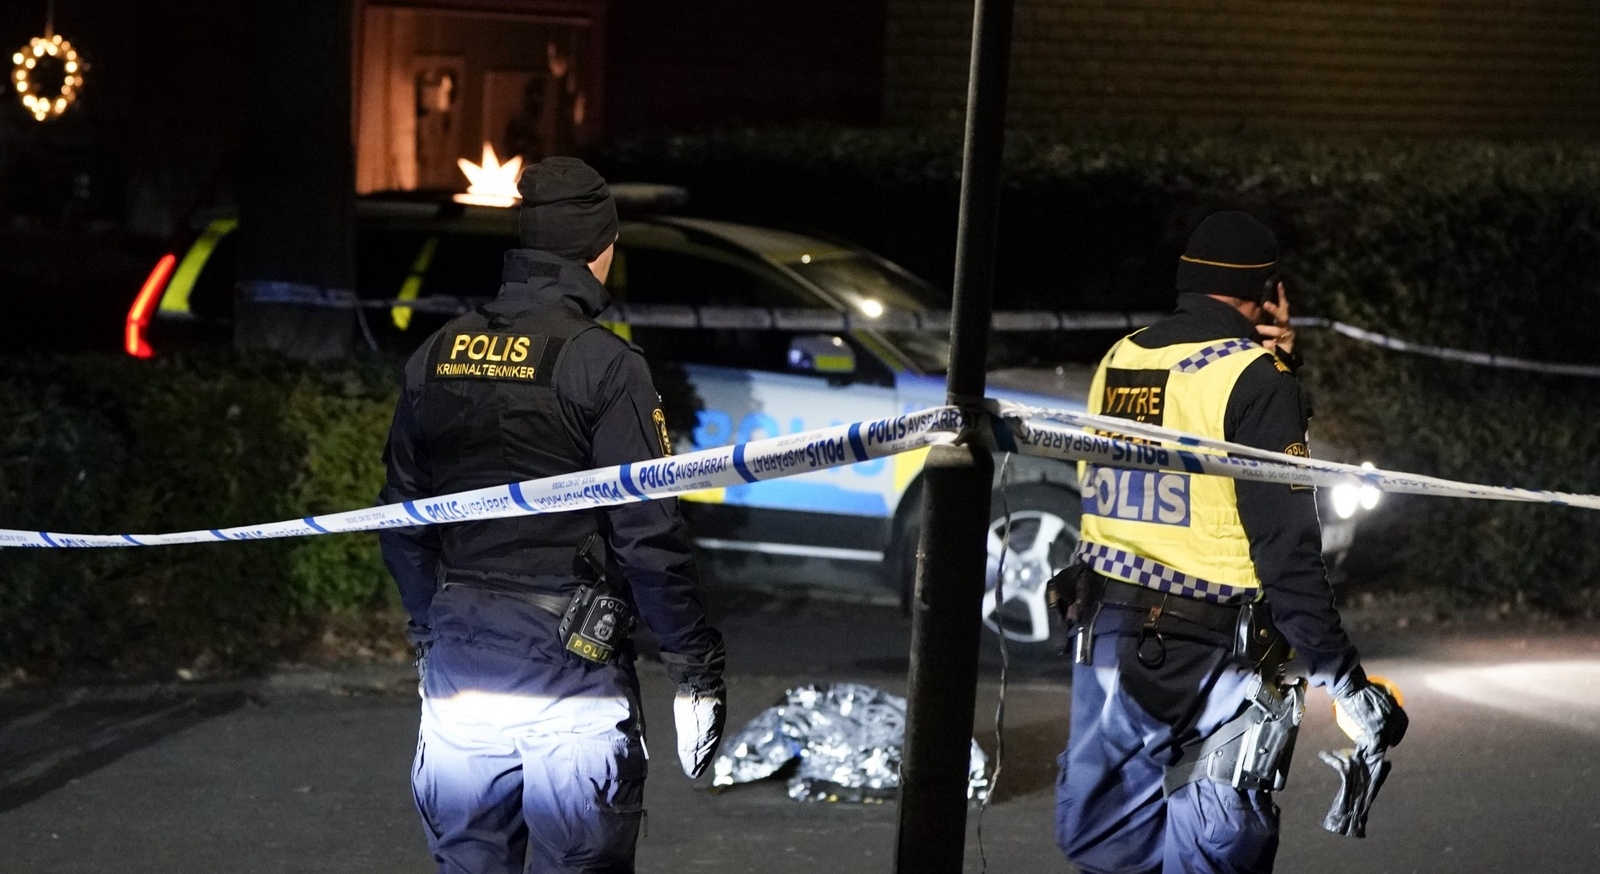 Polisens kriminaltekniker arbetar innanför en avspärrning på Nordanväg i Kävlinge efter ett mordförsök på tisdagskvällen. Foto: Johan Nilsson/TT